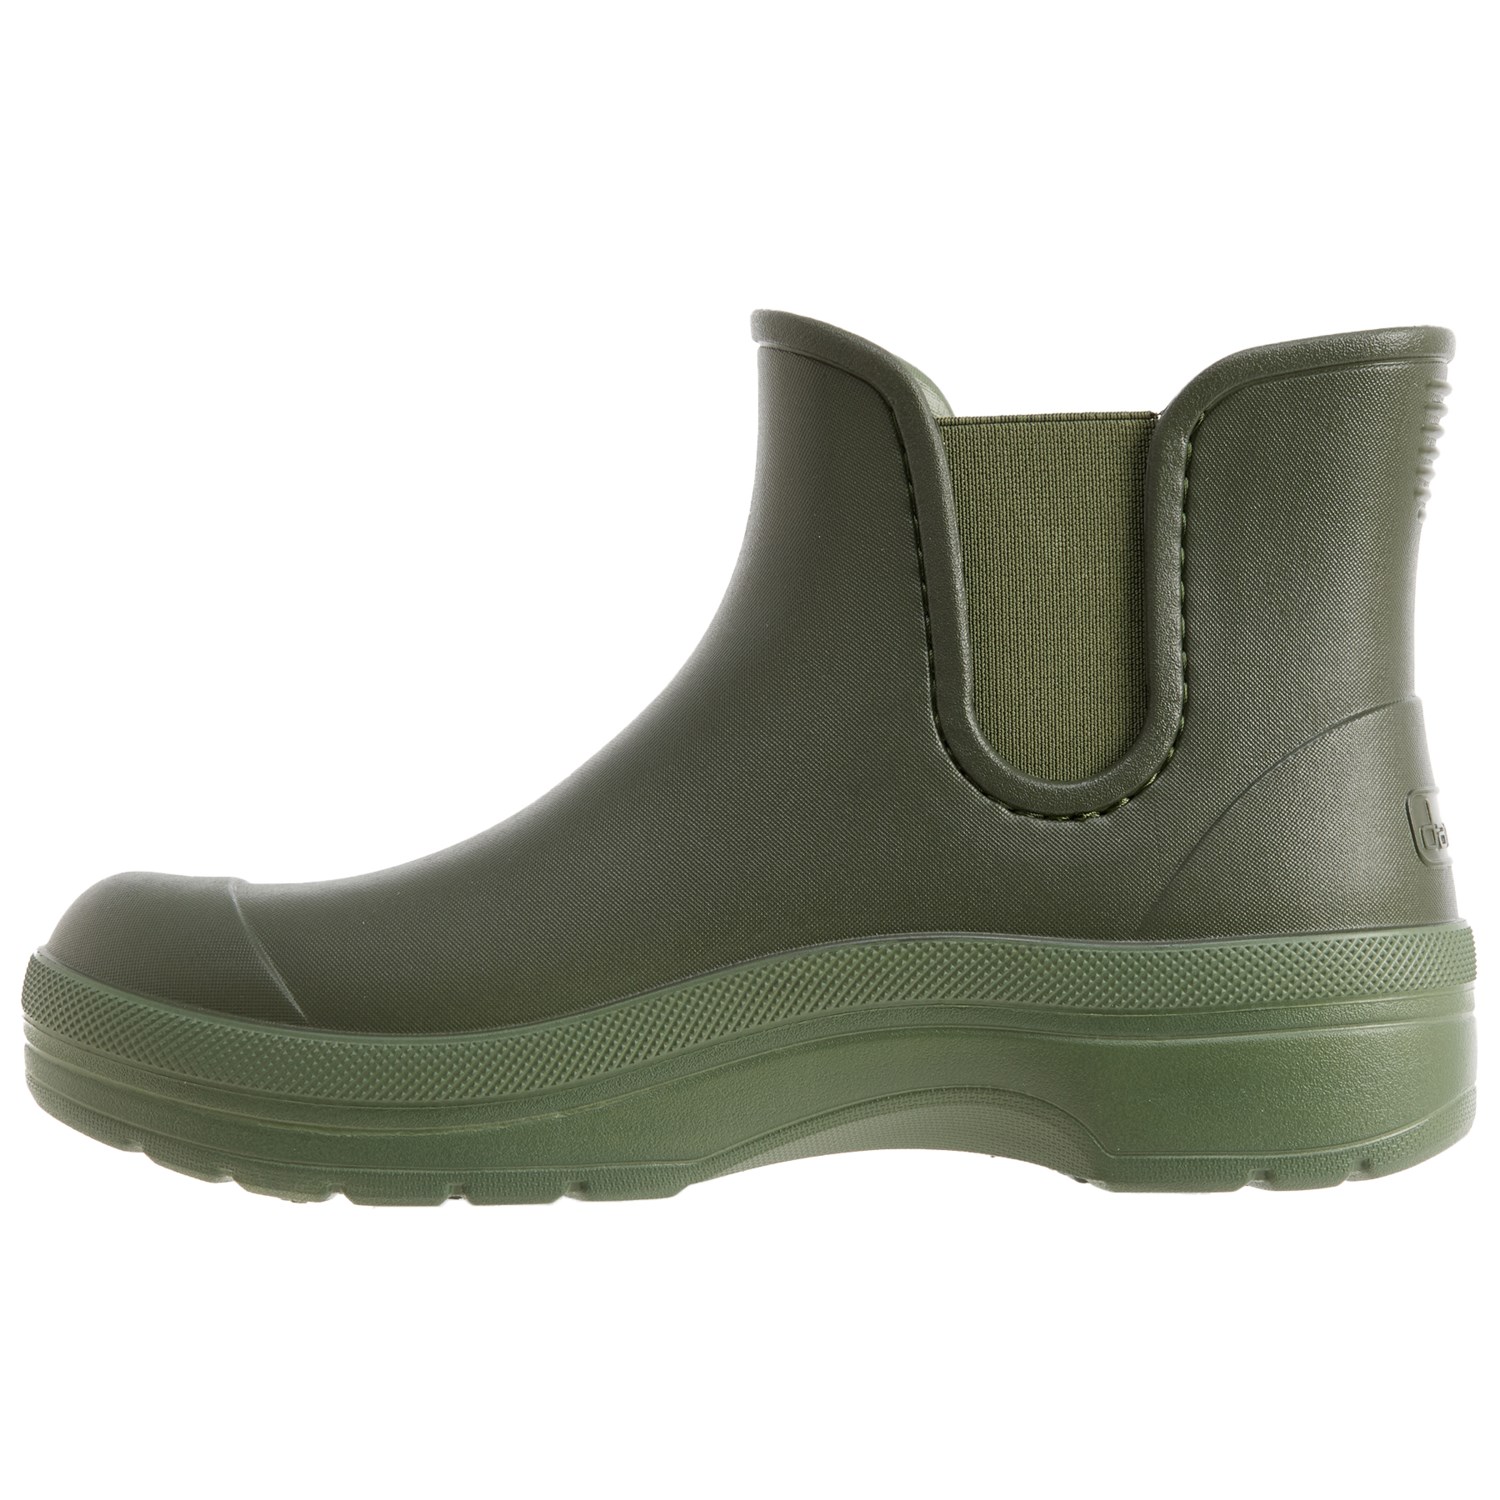 Dansko Karmel Molded Rain Boots (For Women) - Save 37%